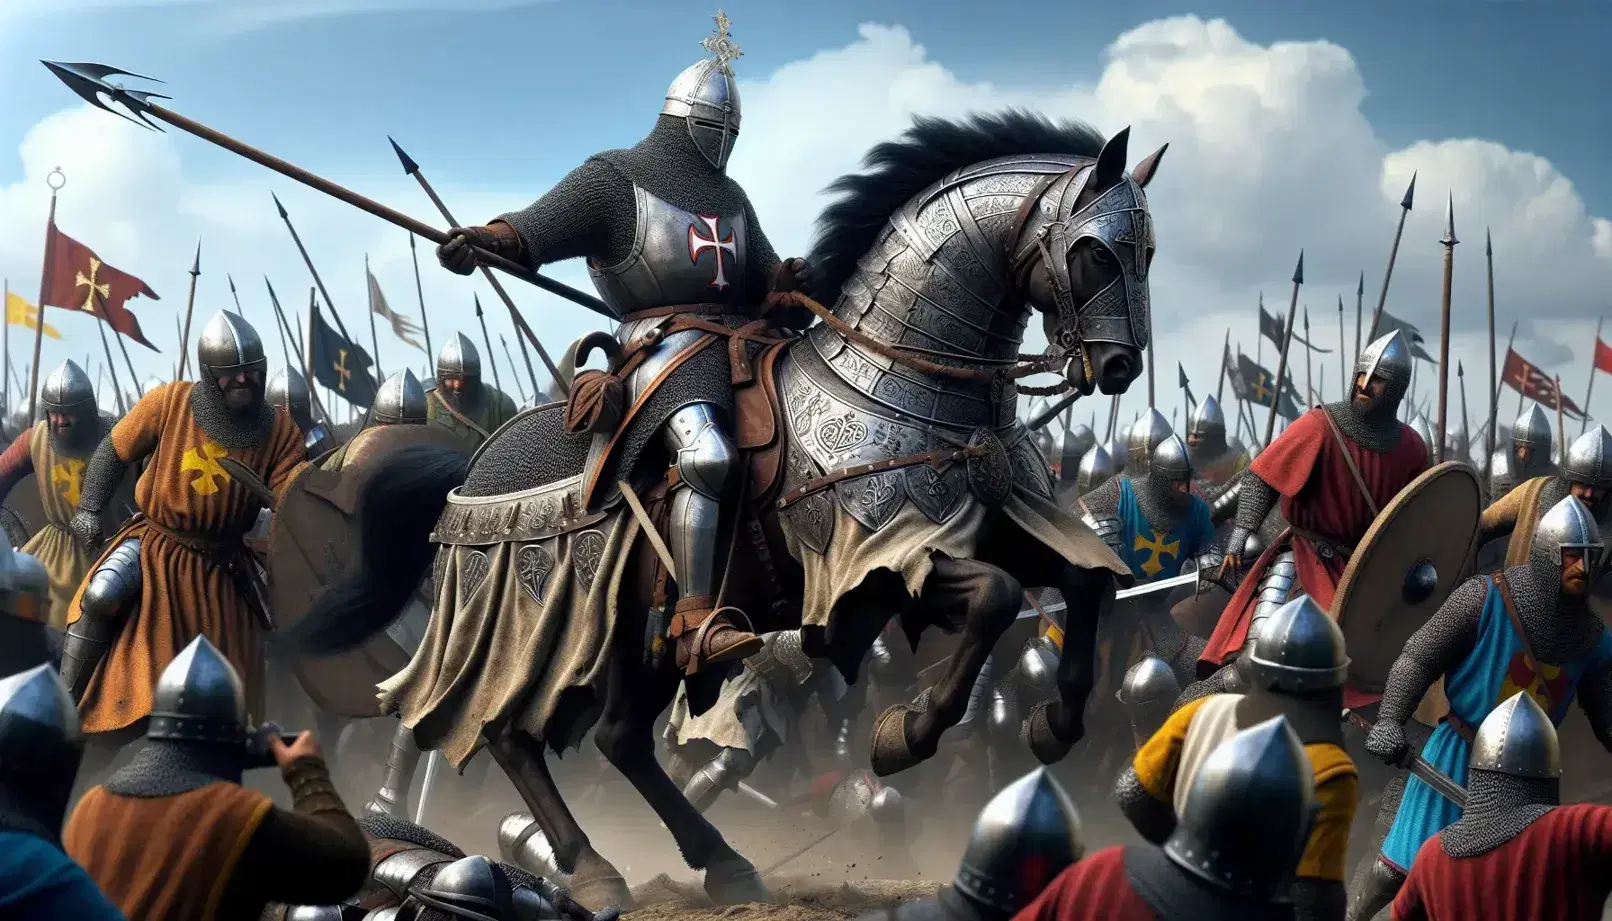 Cavaliere in armatura su cavallo durante battaglia delle Crociate, circondato da guerrieri armati tra caos e fervore bellico.